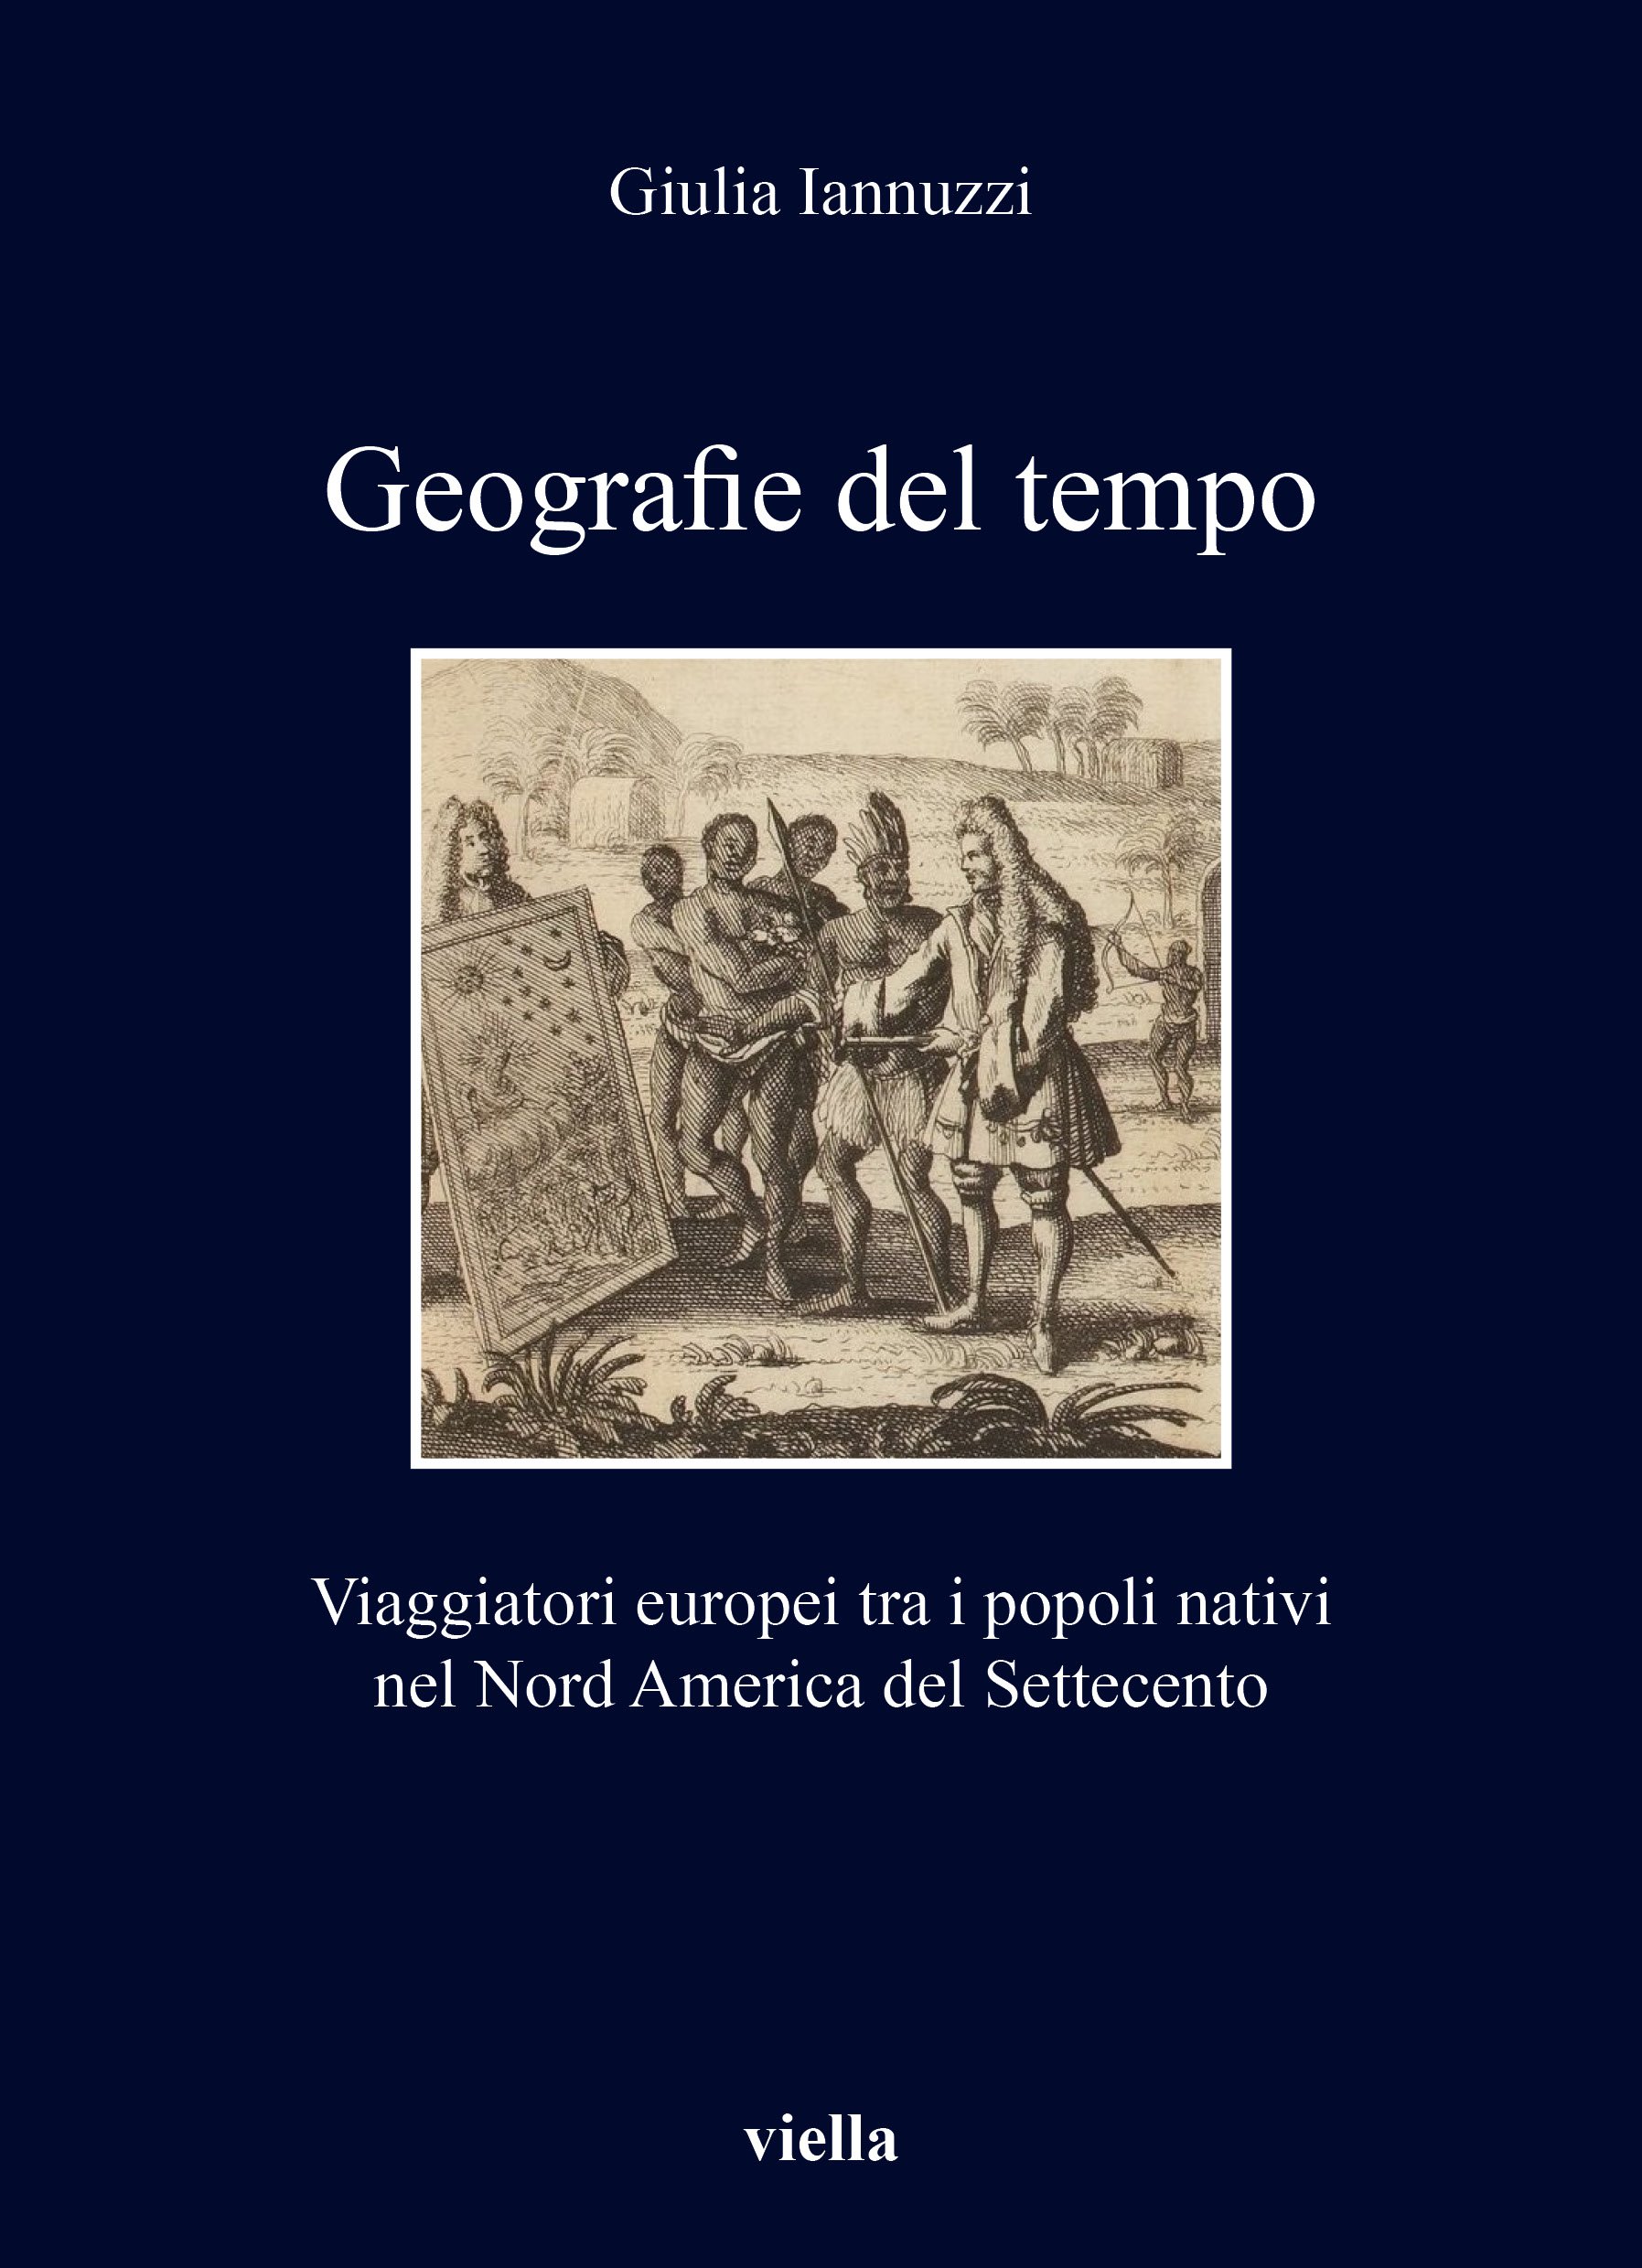 Giulia Iannuzzi, Geografie del tempo. Viaggiatori europei tra i popoli nativi nel Nord America del Settecento (Viella, 2022)